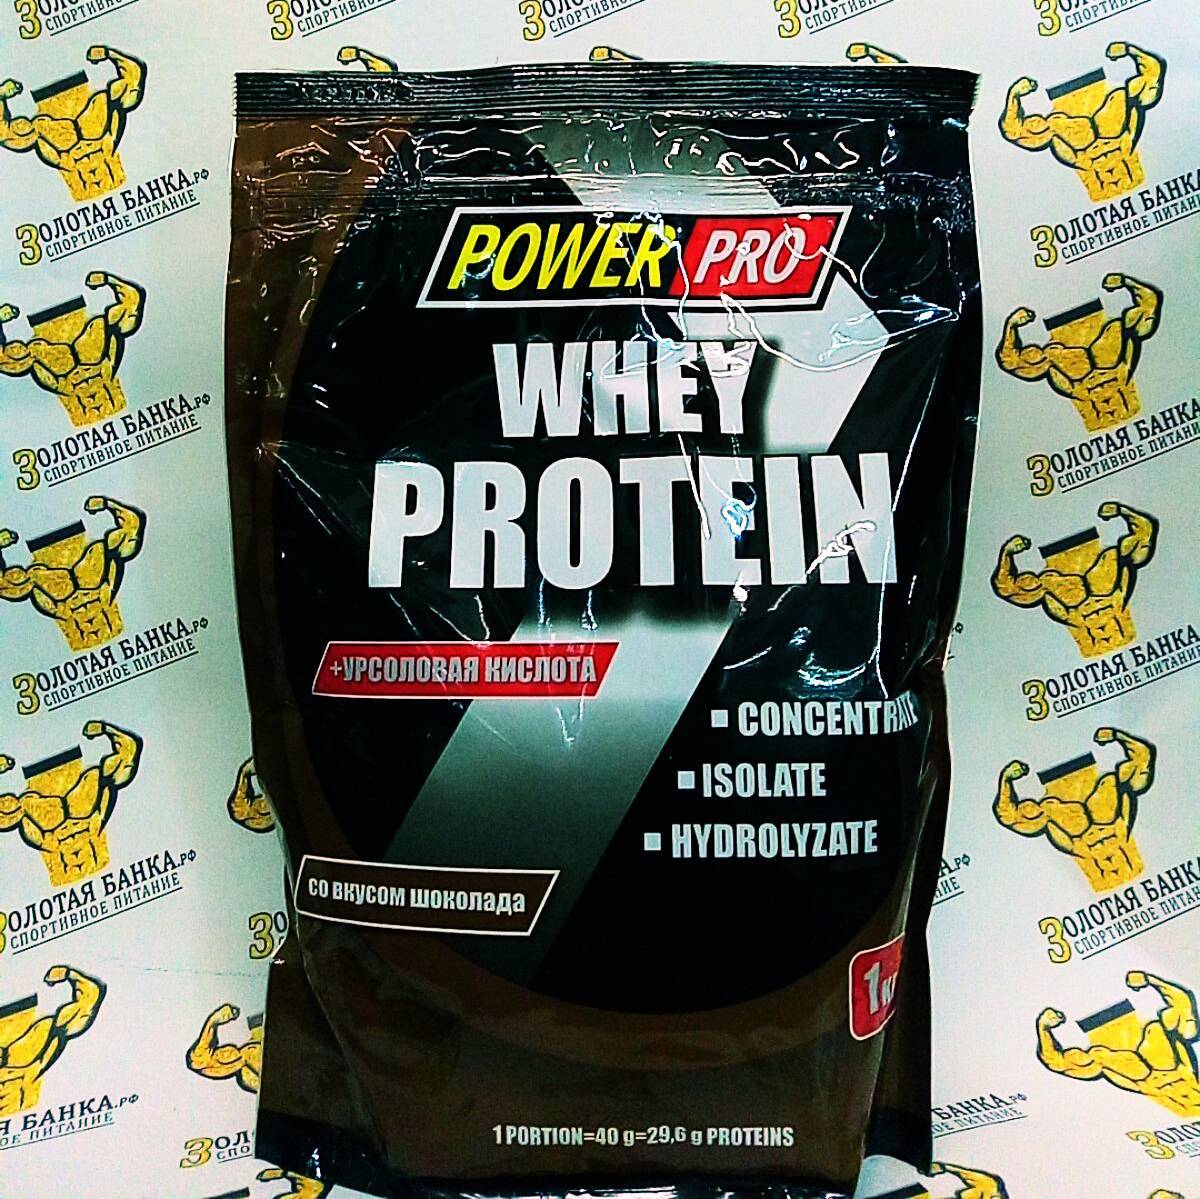 Как правильно принимать whey protein от компании pureprotein